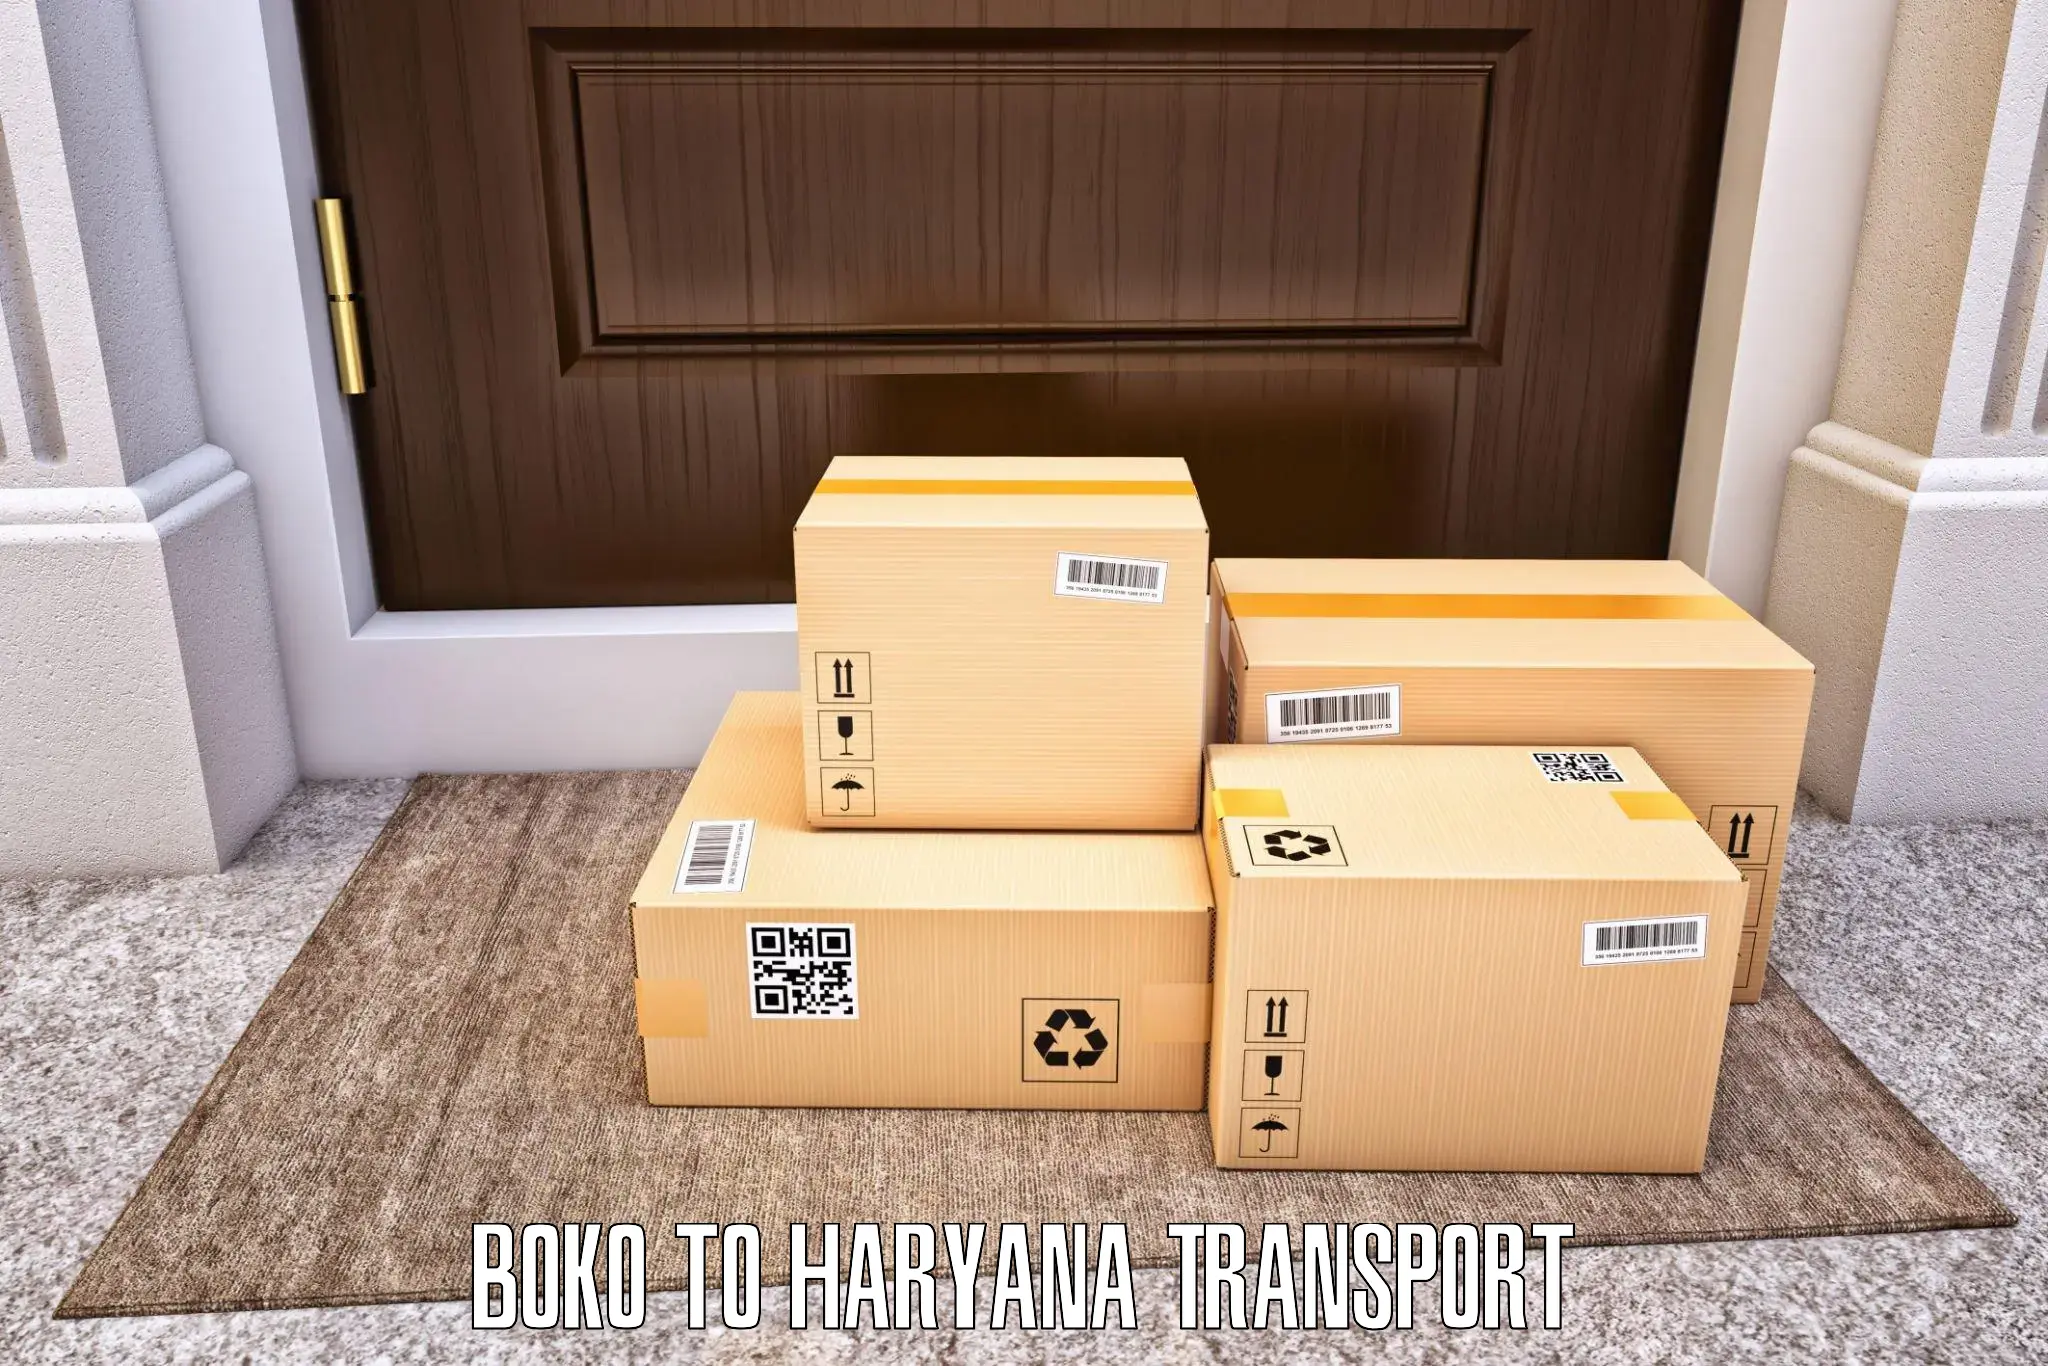 Daily parcel service transport Boko to Shahabad Markanda